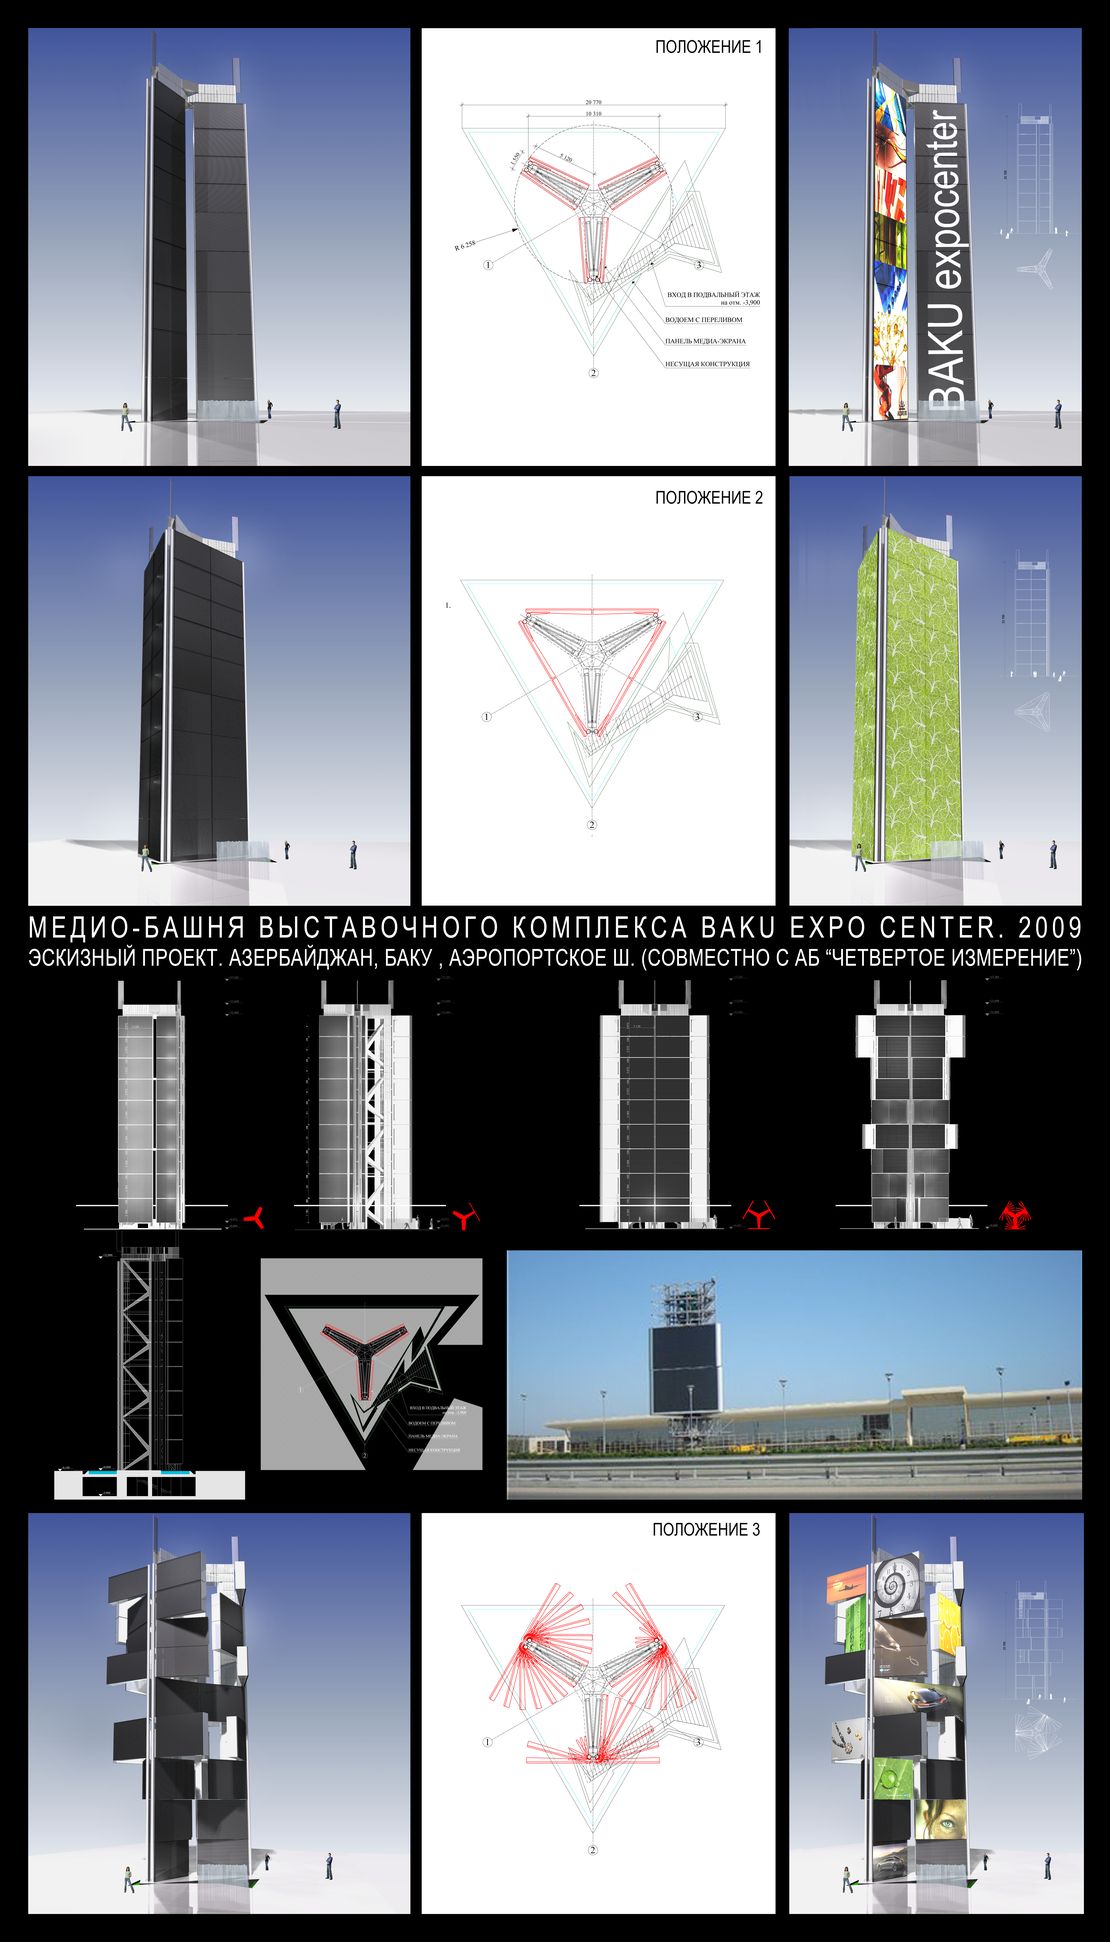 Медиа-башня выставочного комплекса Baku Expo Center - вариант 1